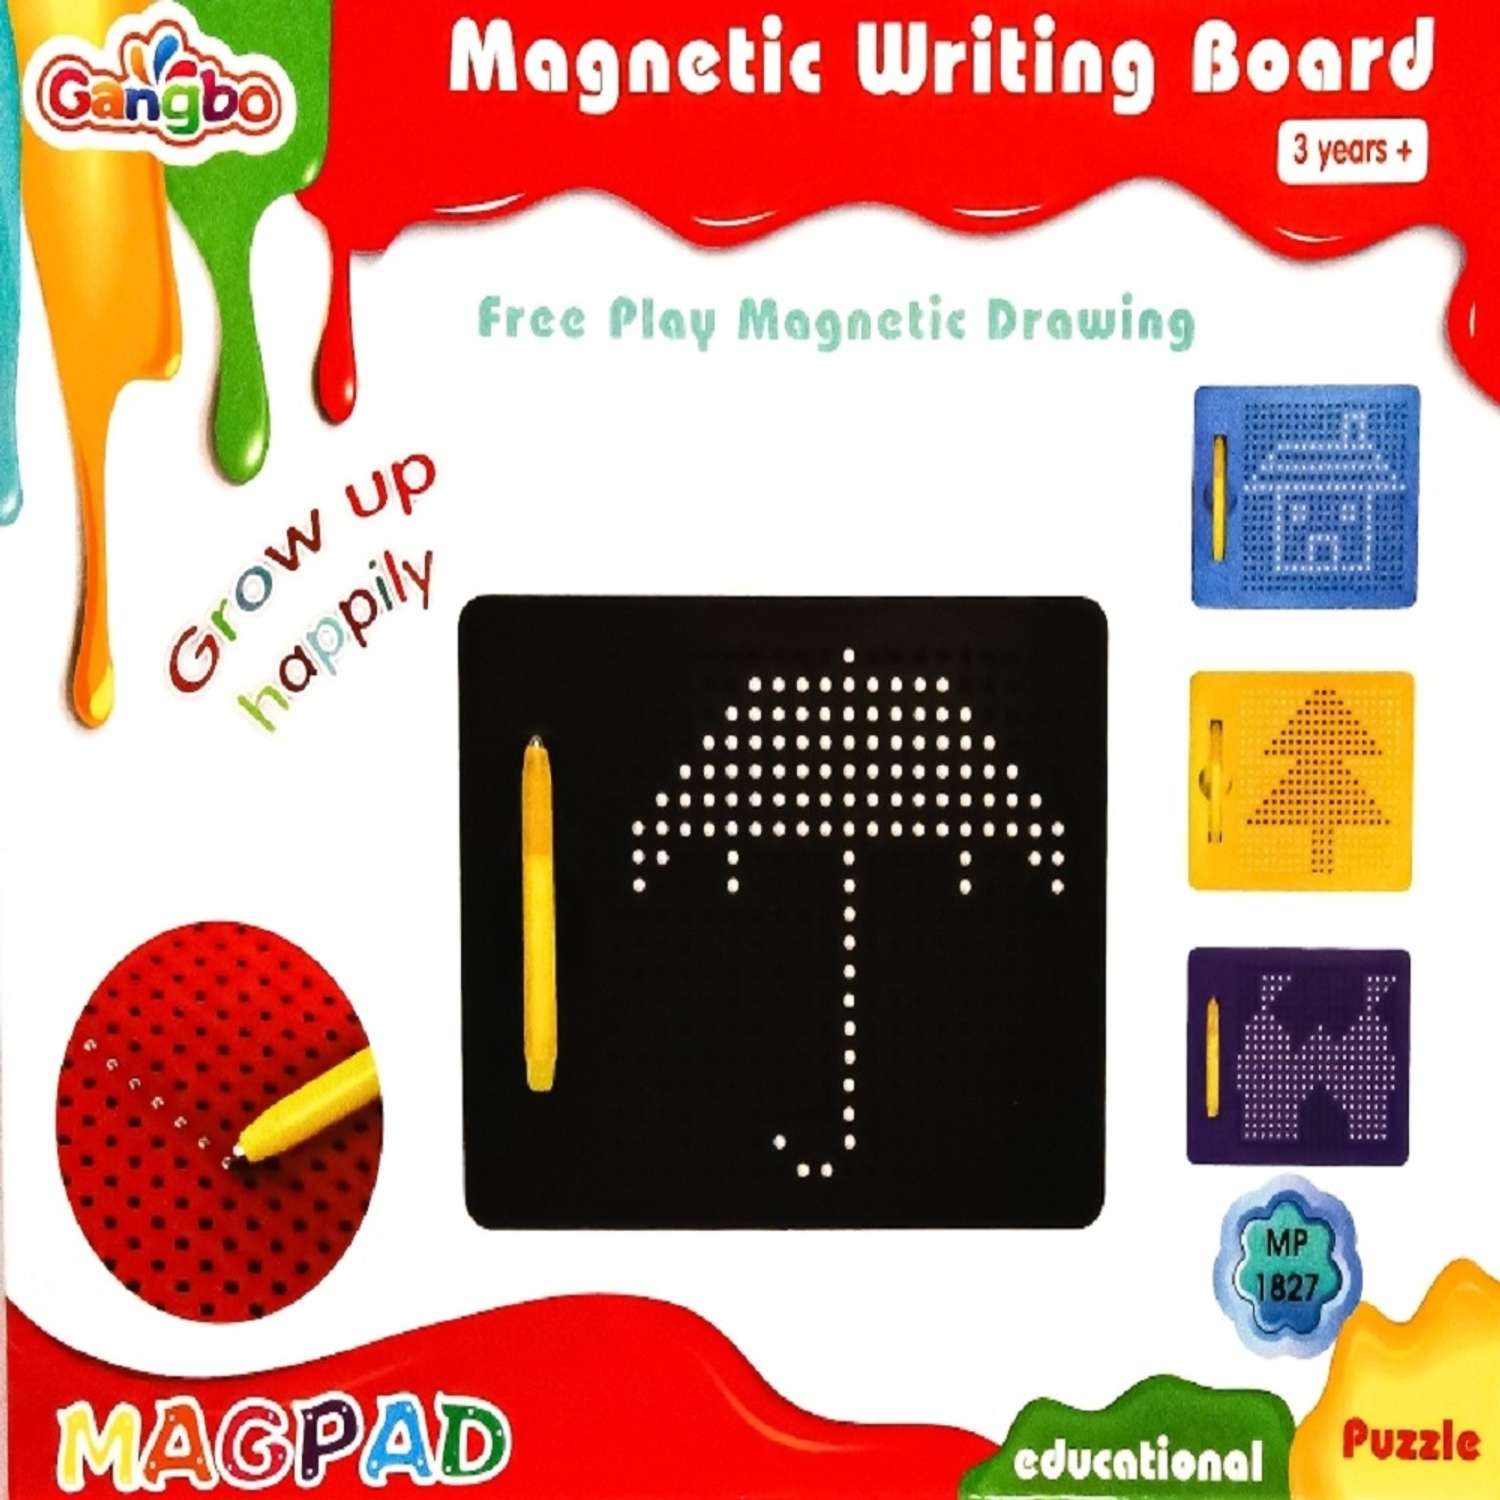 Игровой набор головоломка GANDBO планшет для рисования магнитами 380 деталей - фото 1